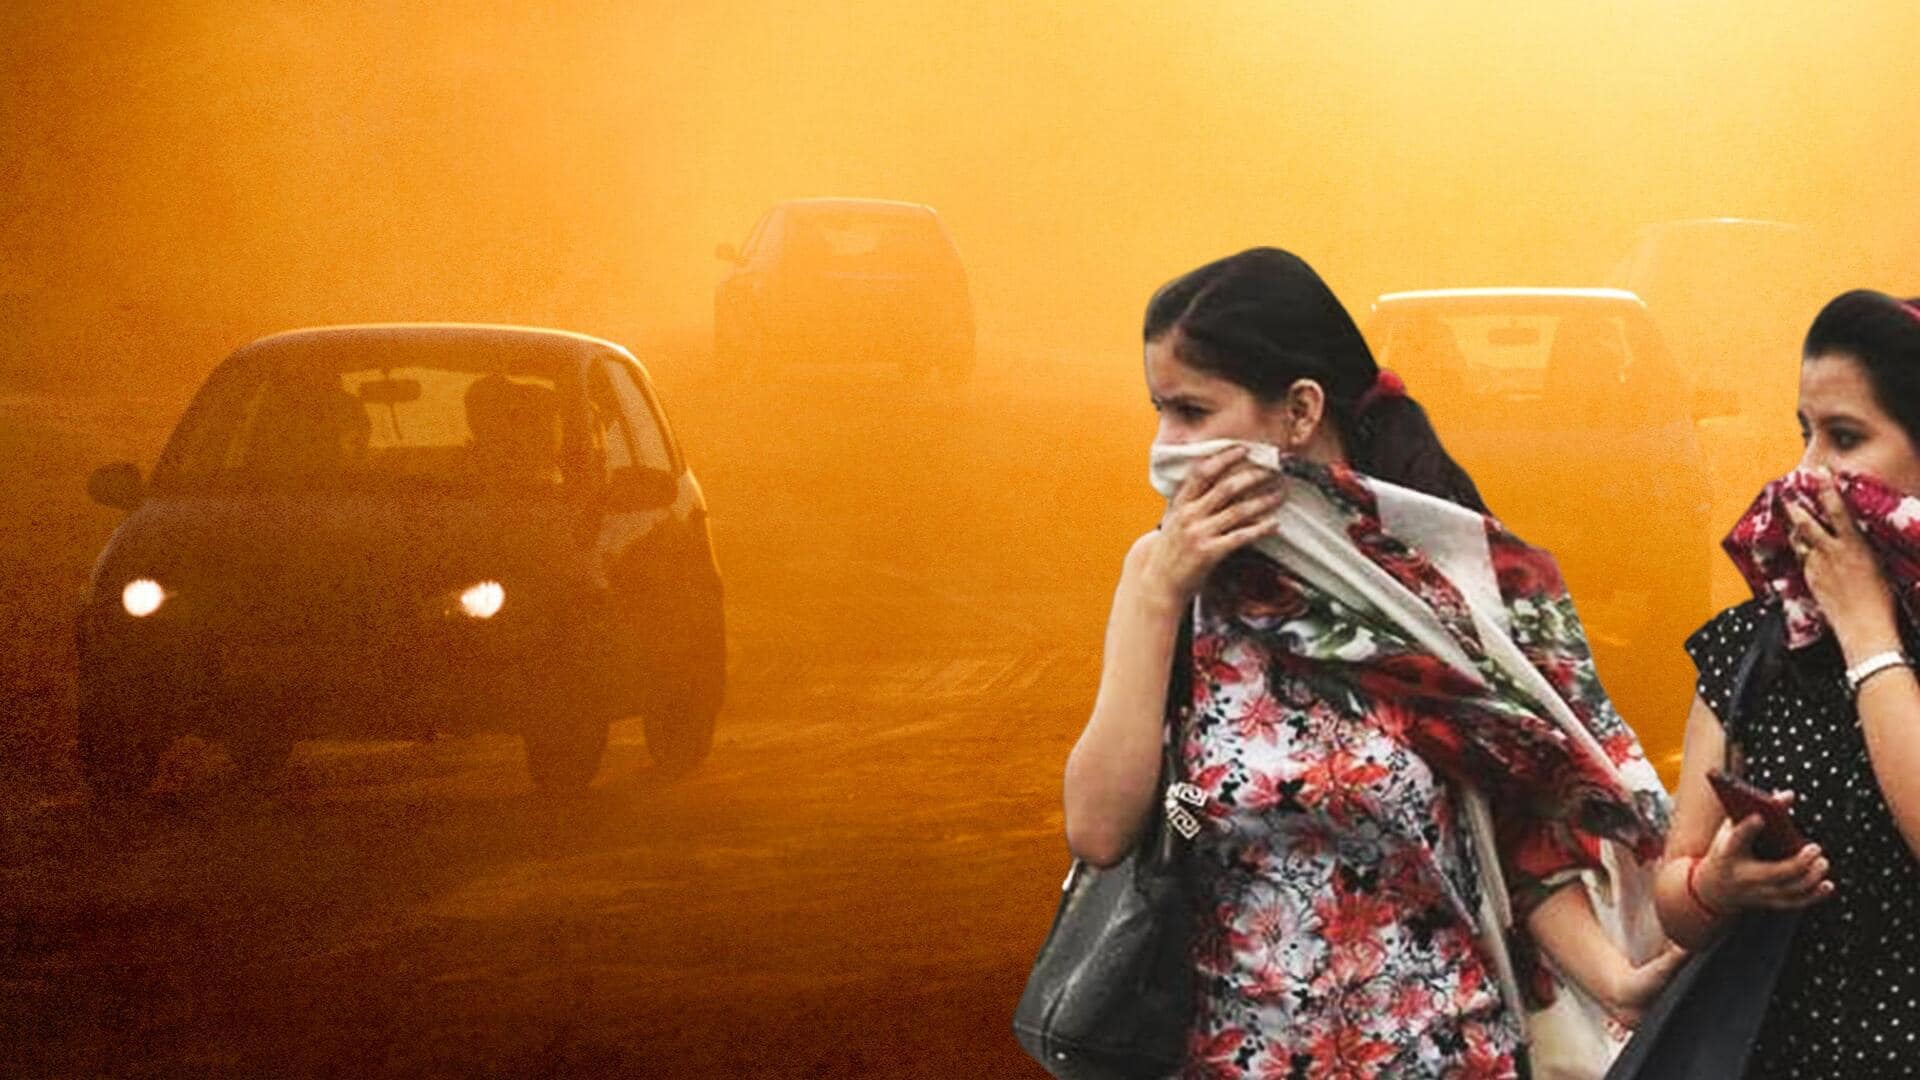 वायु प्रदूषण: यात्रा करते समय खुद का इस तरह से रखें ध्यान, नहीं होगी कोई समस्या